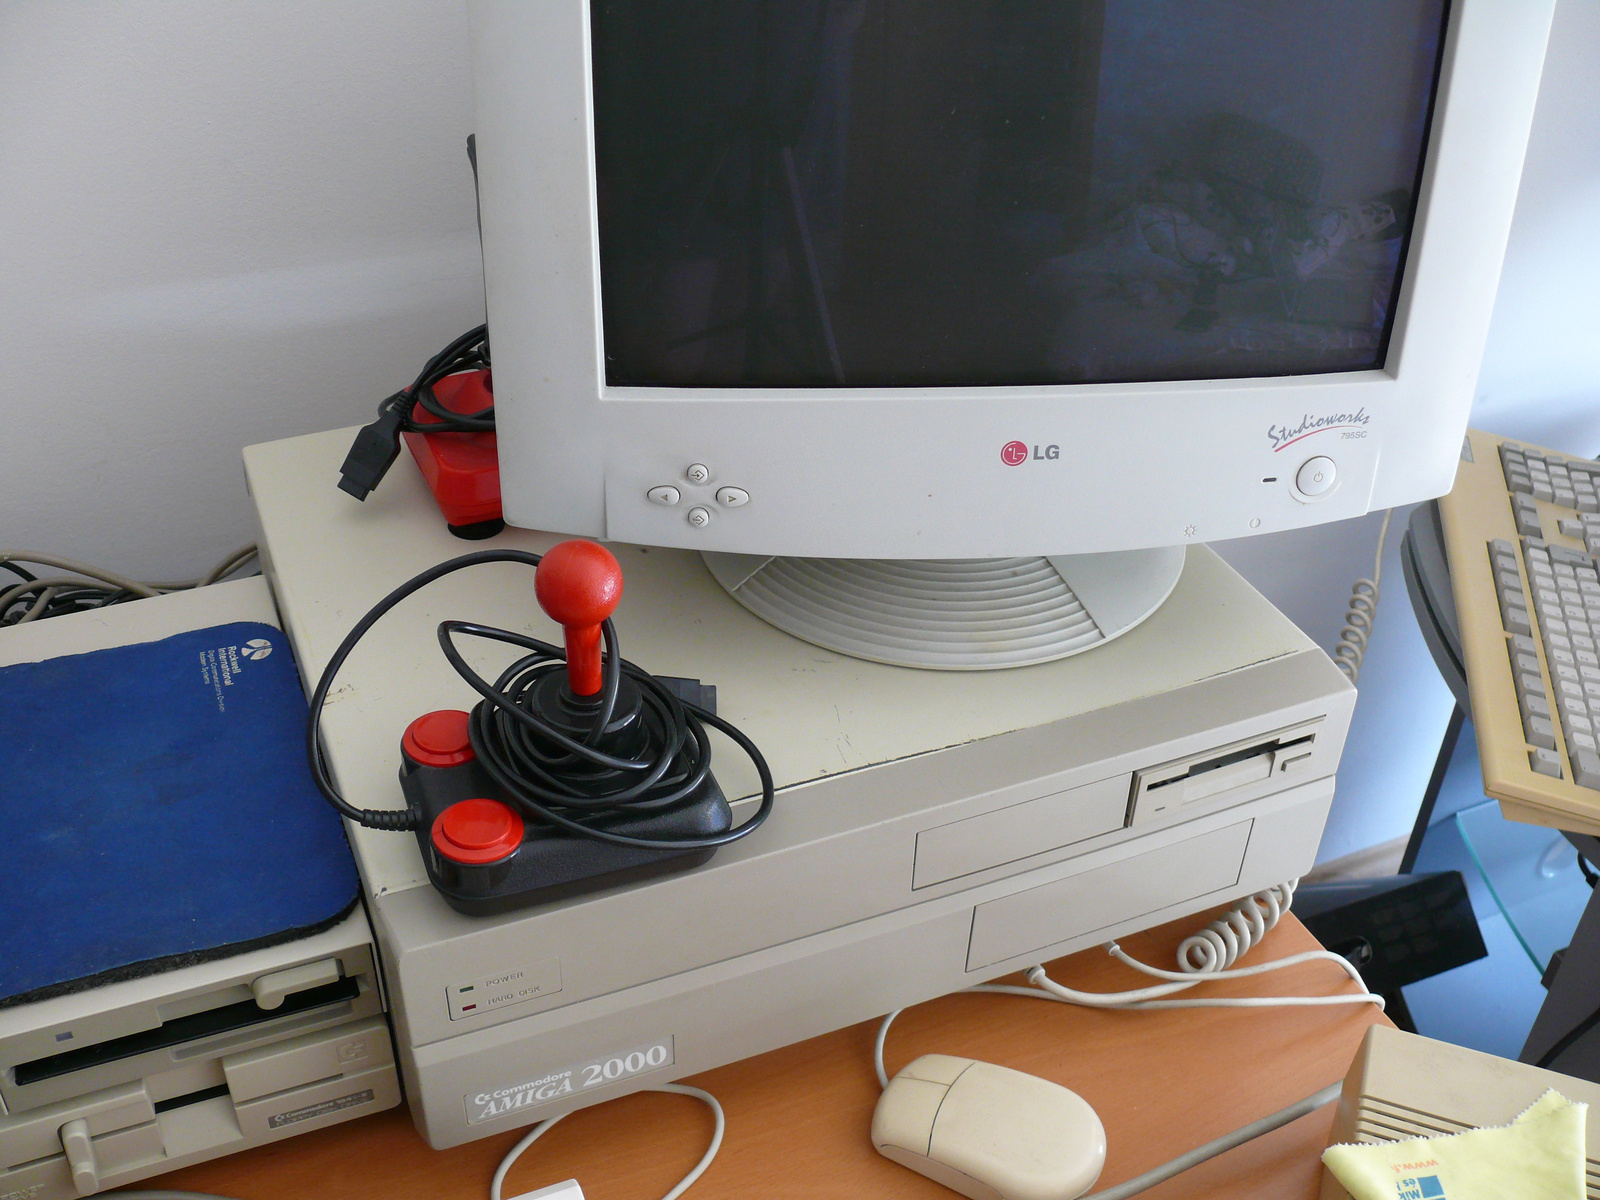 Commodore Amiga 2000